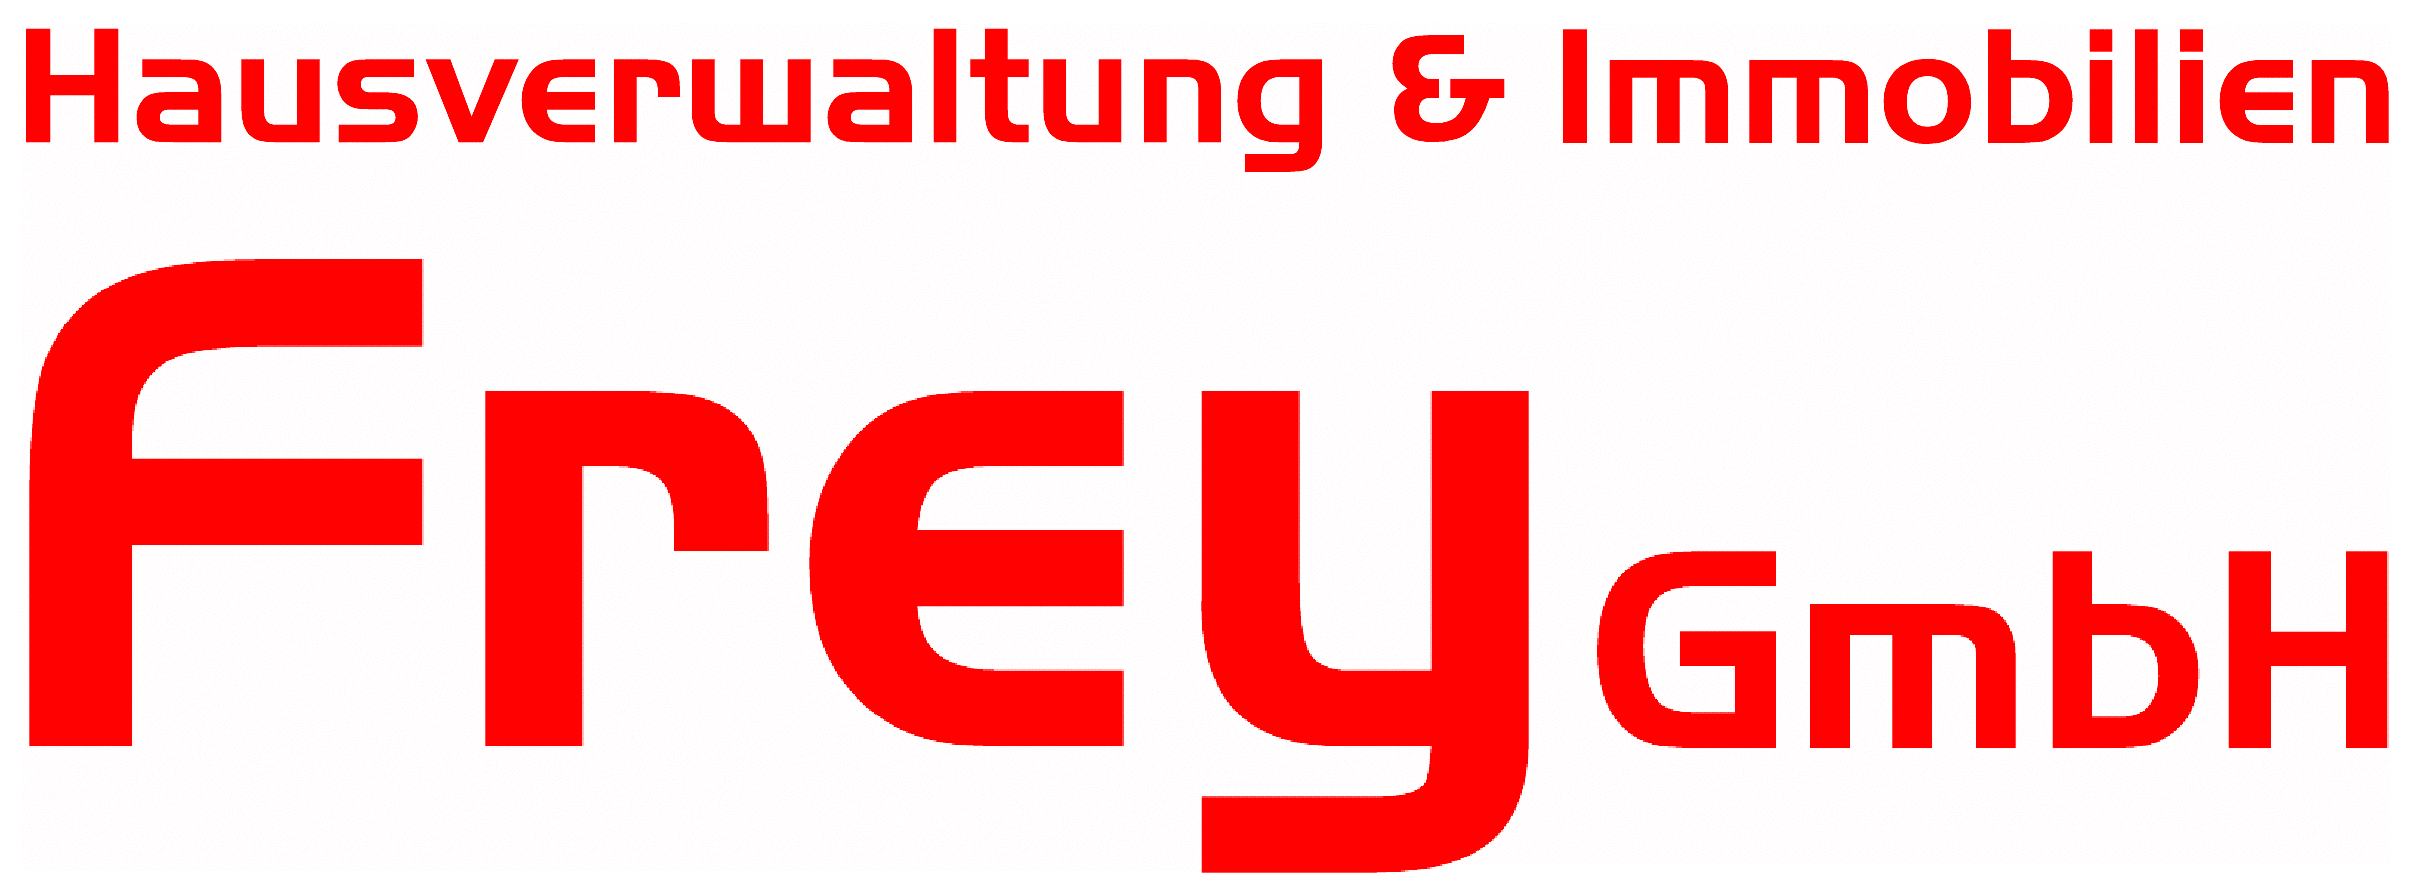 Hausverwaltung & Immobilien Frey GmbH